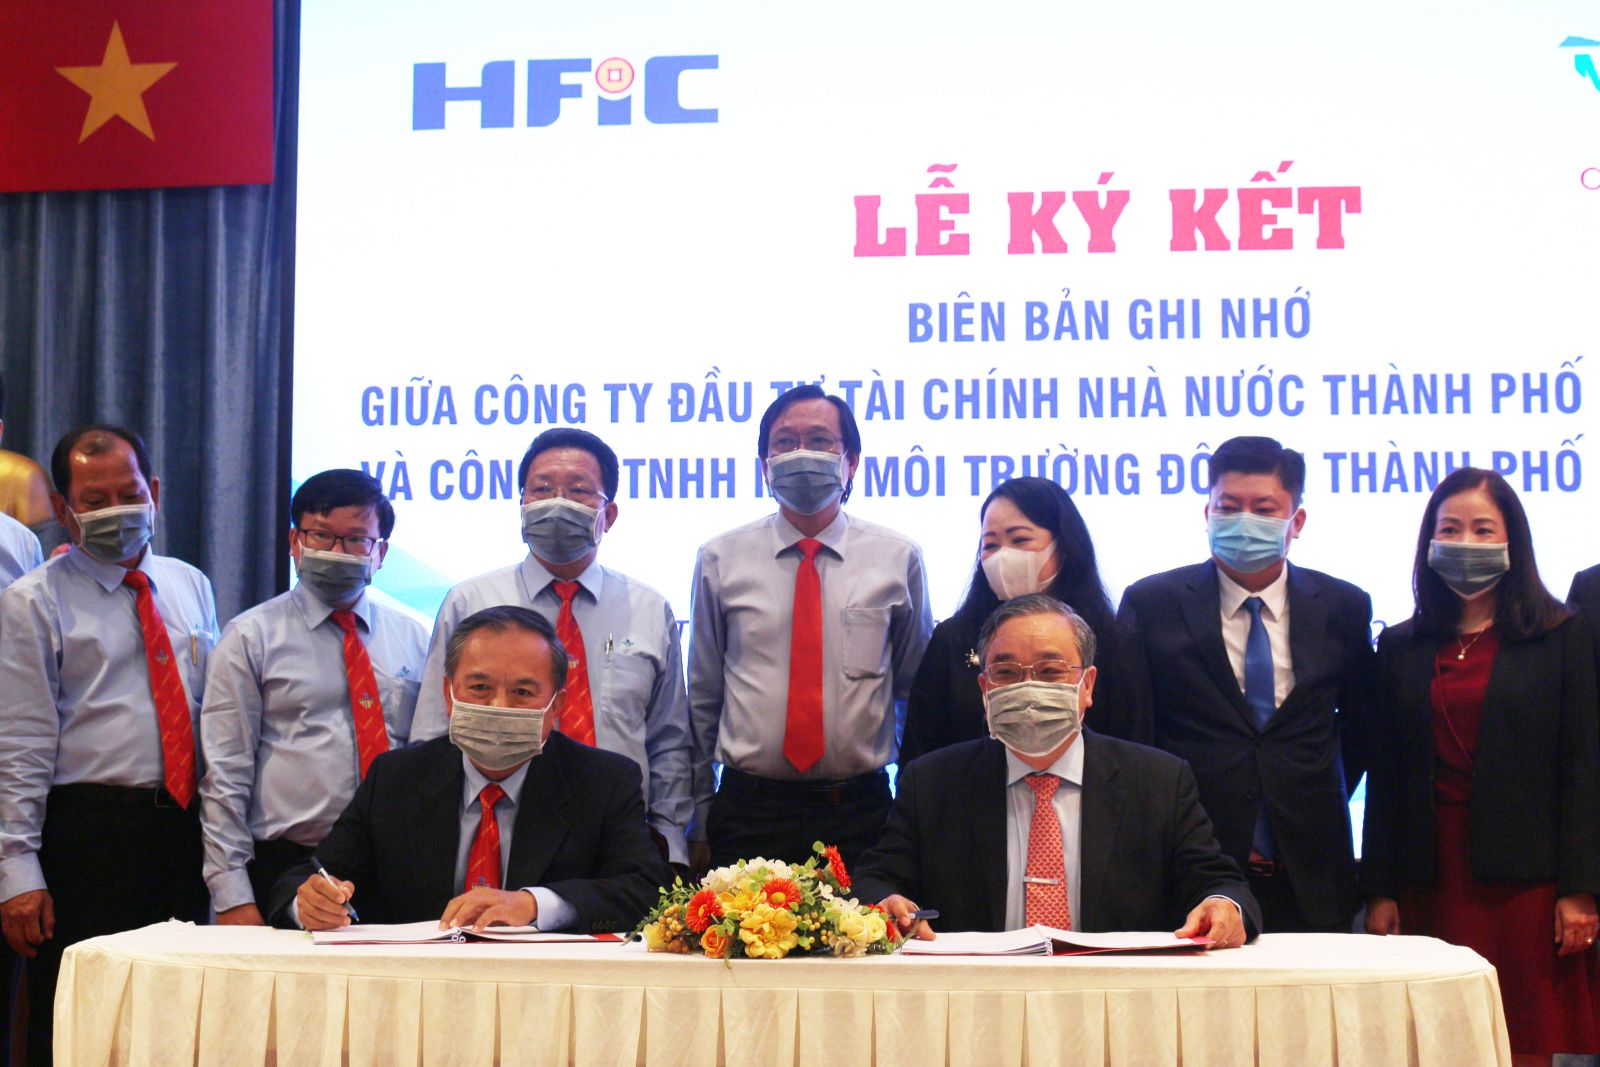 Dự án Hợp tác chiến lược toàn diện với Công ty bóng đá trực tuyến xoilac 6
 Đầu tư Tài chính Nhà nước Thành phố Hồ Chí Minh